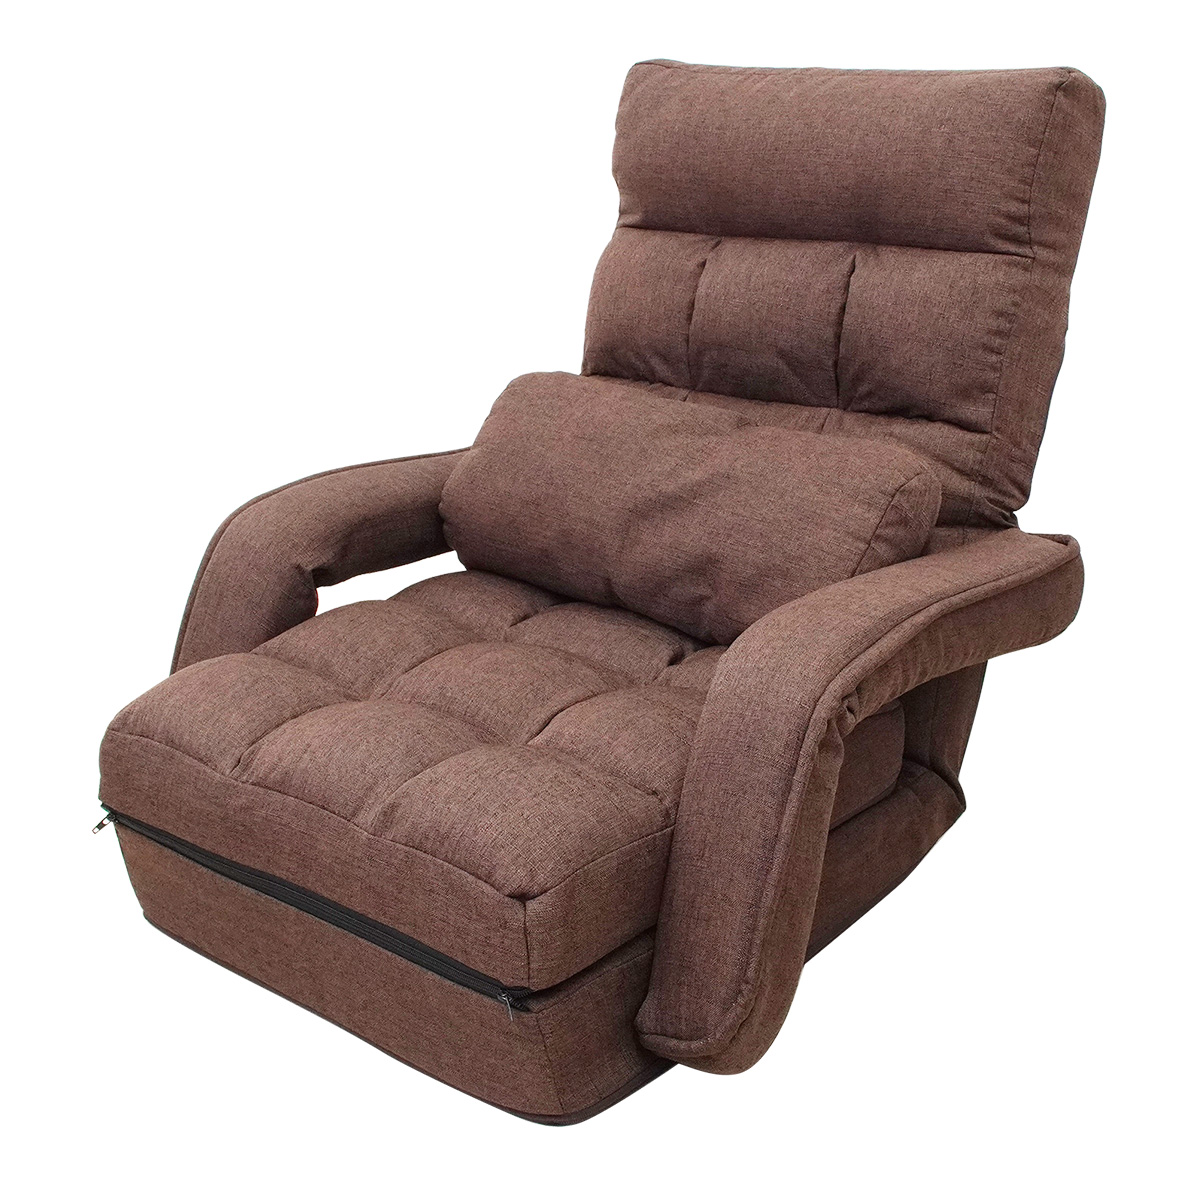 人気爆買い座椅子 リクライニング 肘掛付き ハイバック ソファベッド コンパクト 座椅子